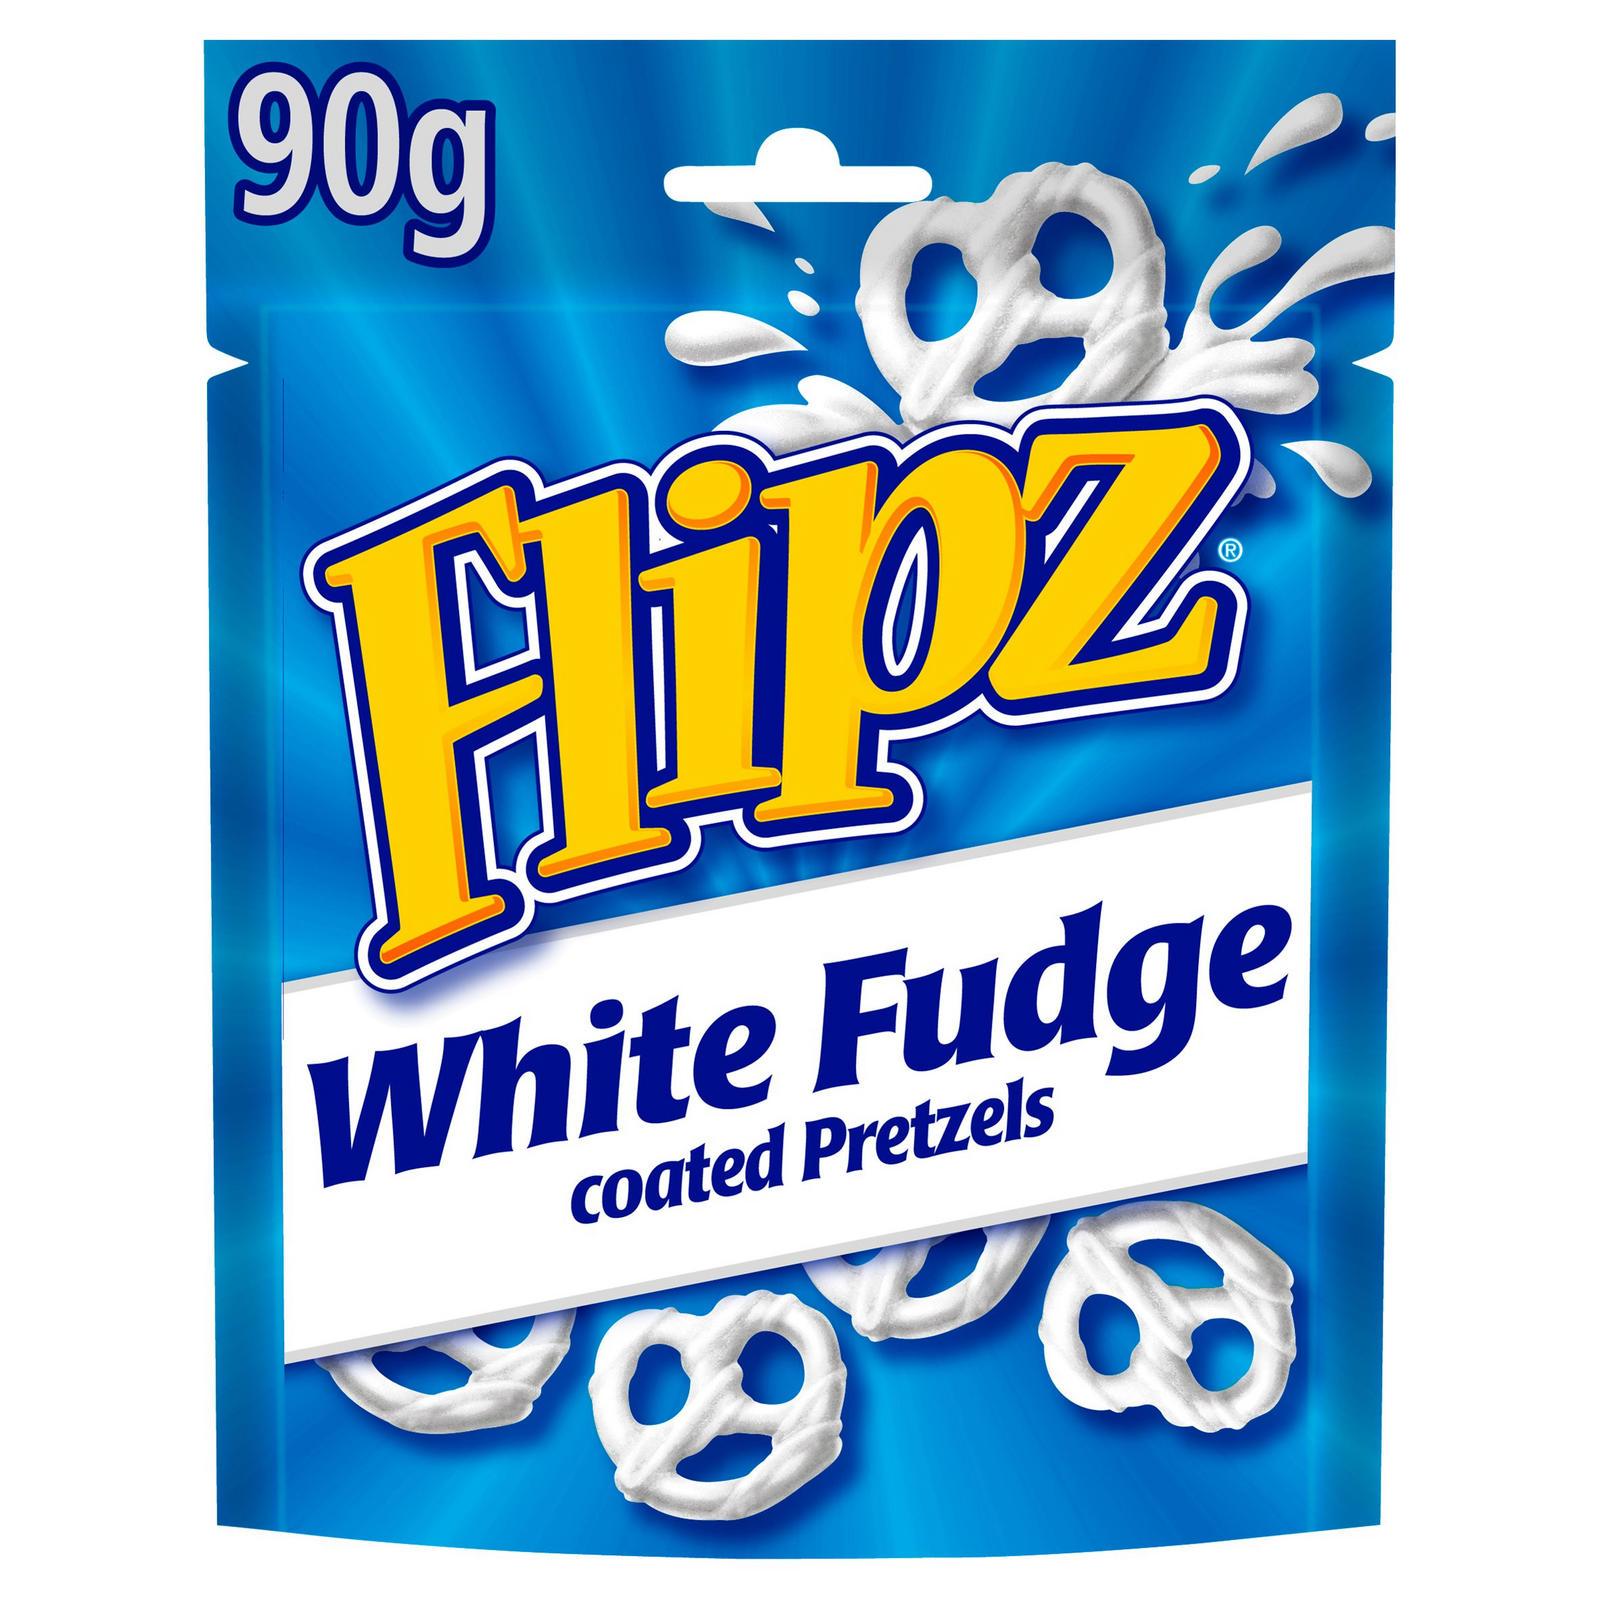 Flipz White Fudge Pretzels fehér csokiba mártott perecek 90g